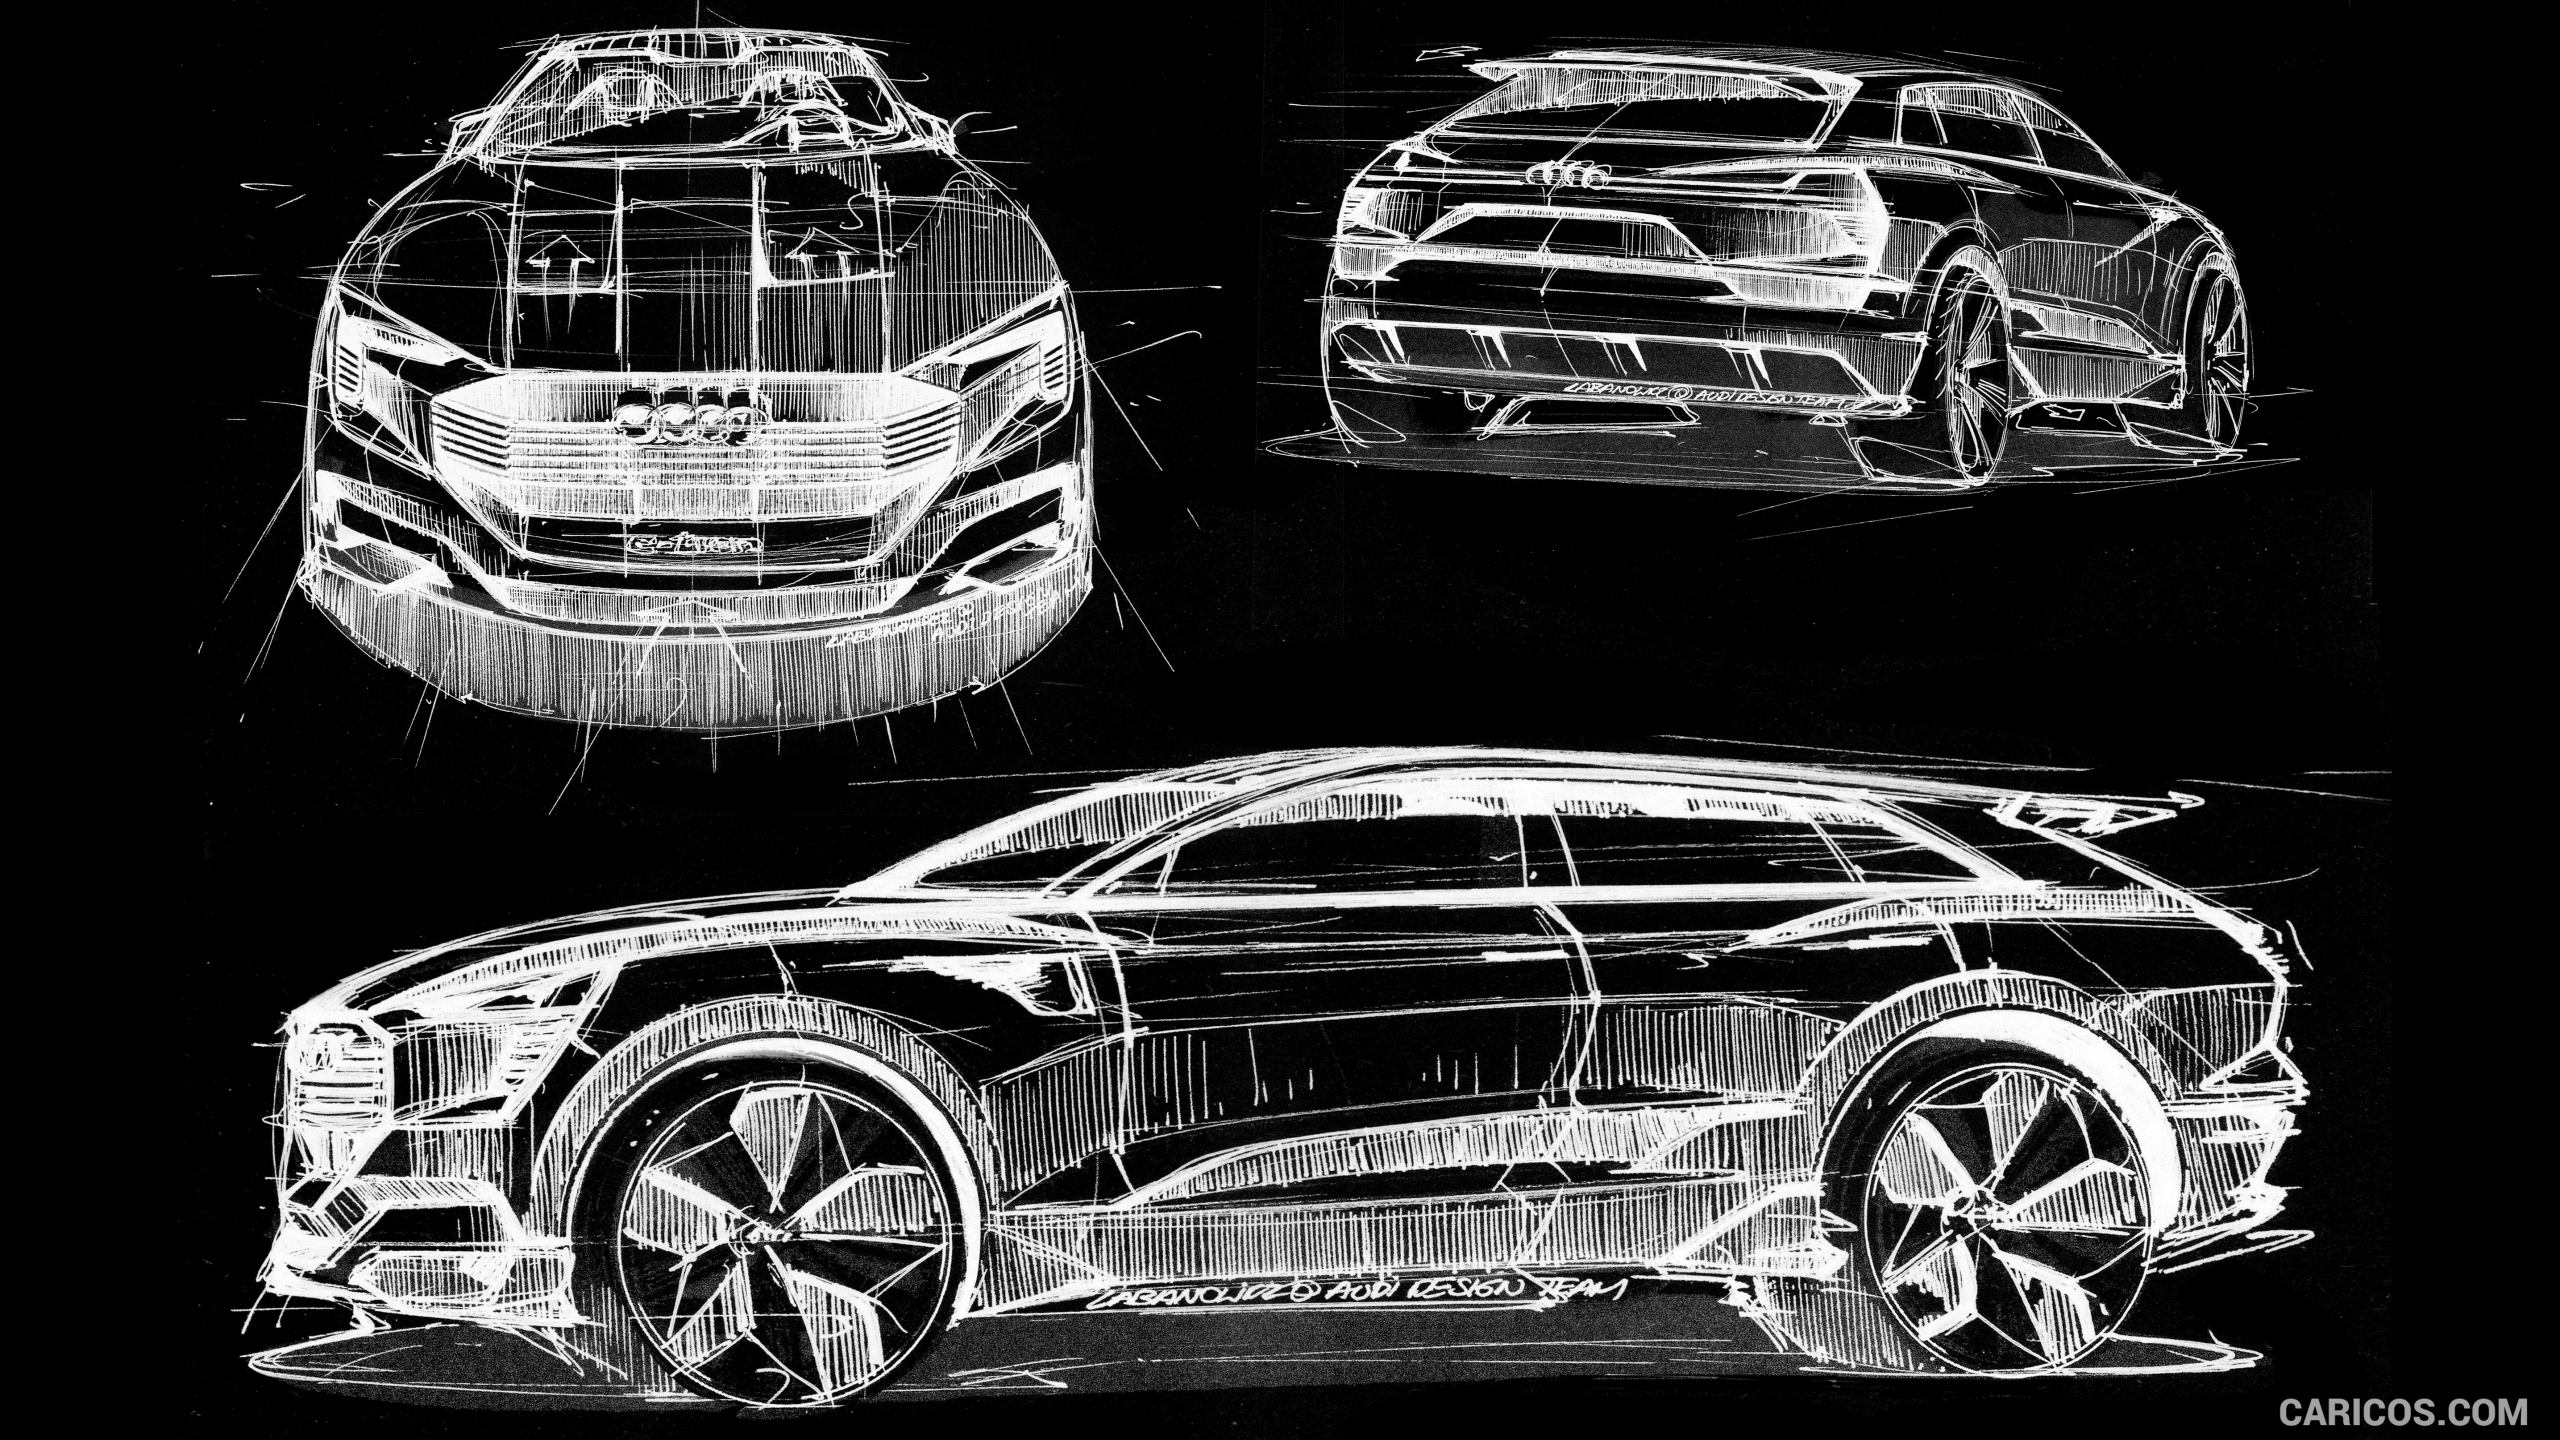 2015 Audi etron Quattro SUV Concept  Design Sketch  Wallpaper 35 